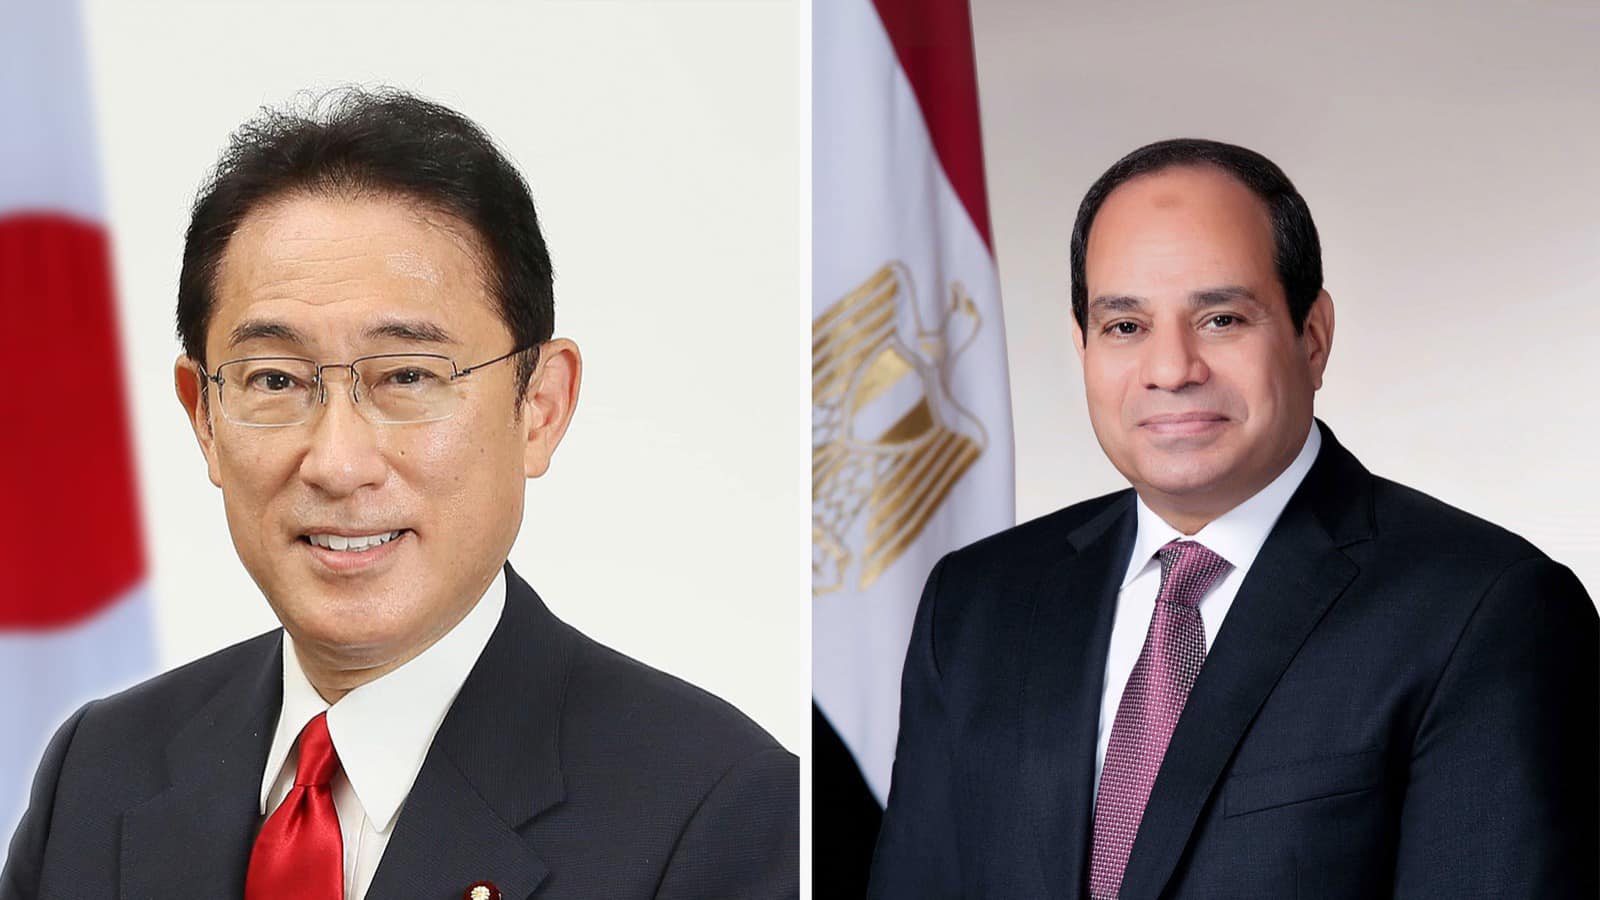 السيسي: أدعو الشركات اليابانية لضخ مزيد من الاستثمارات في مصر